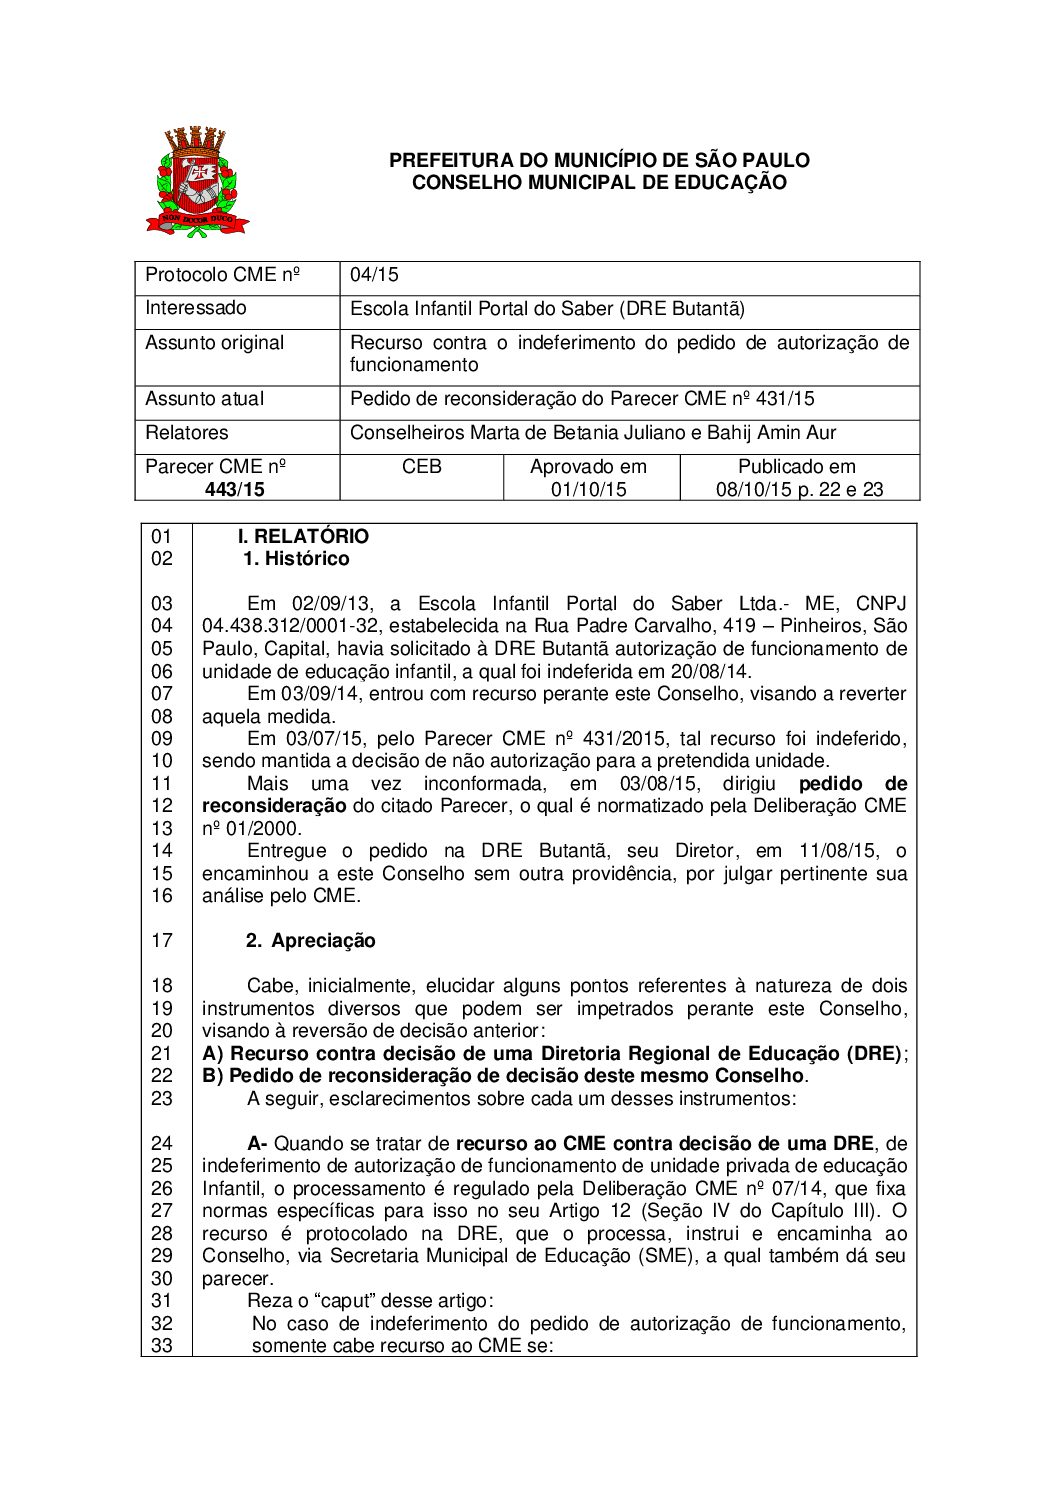 Parecer CME nº 443/2015 - Escola Infantil Portal do Saber (DRE Butantã) - Pedido de reconsideração do Parecer CME nº 431/2015